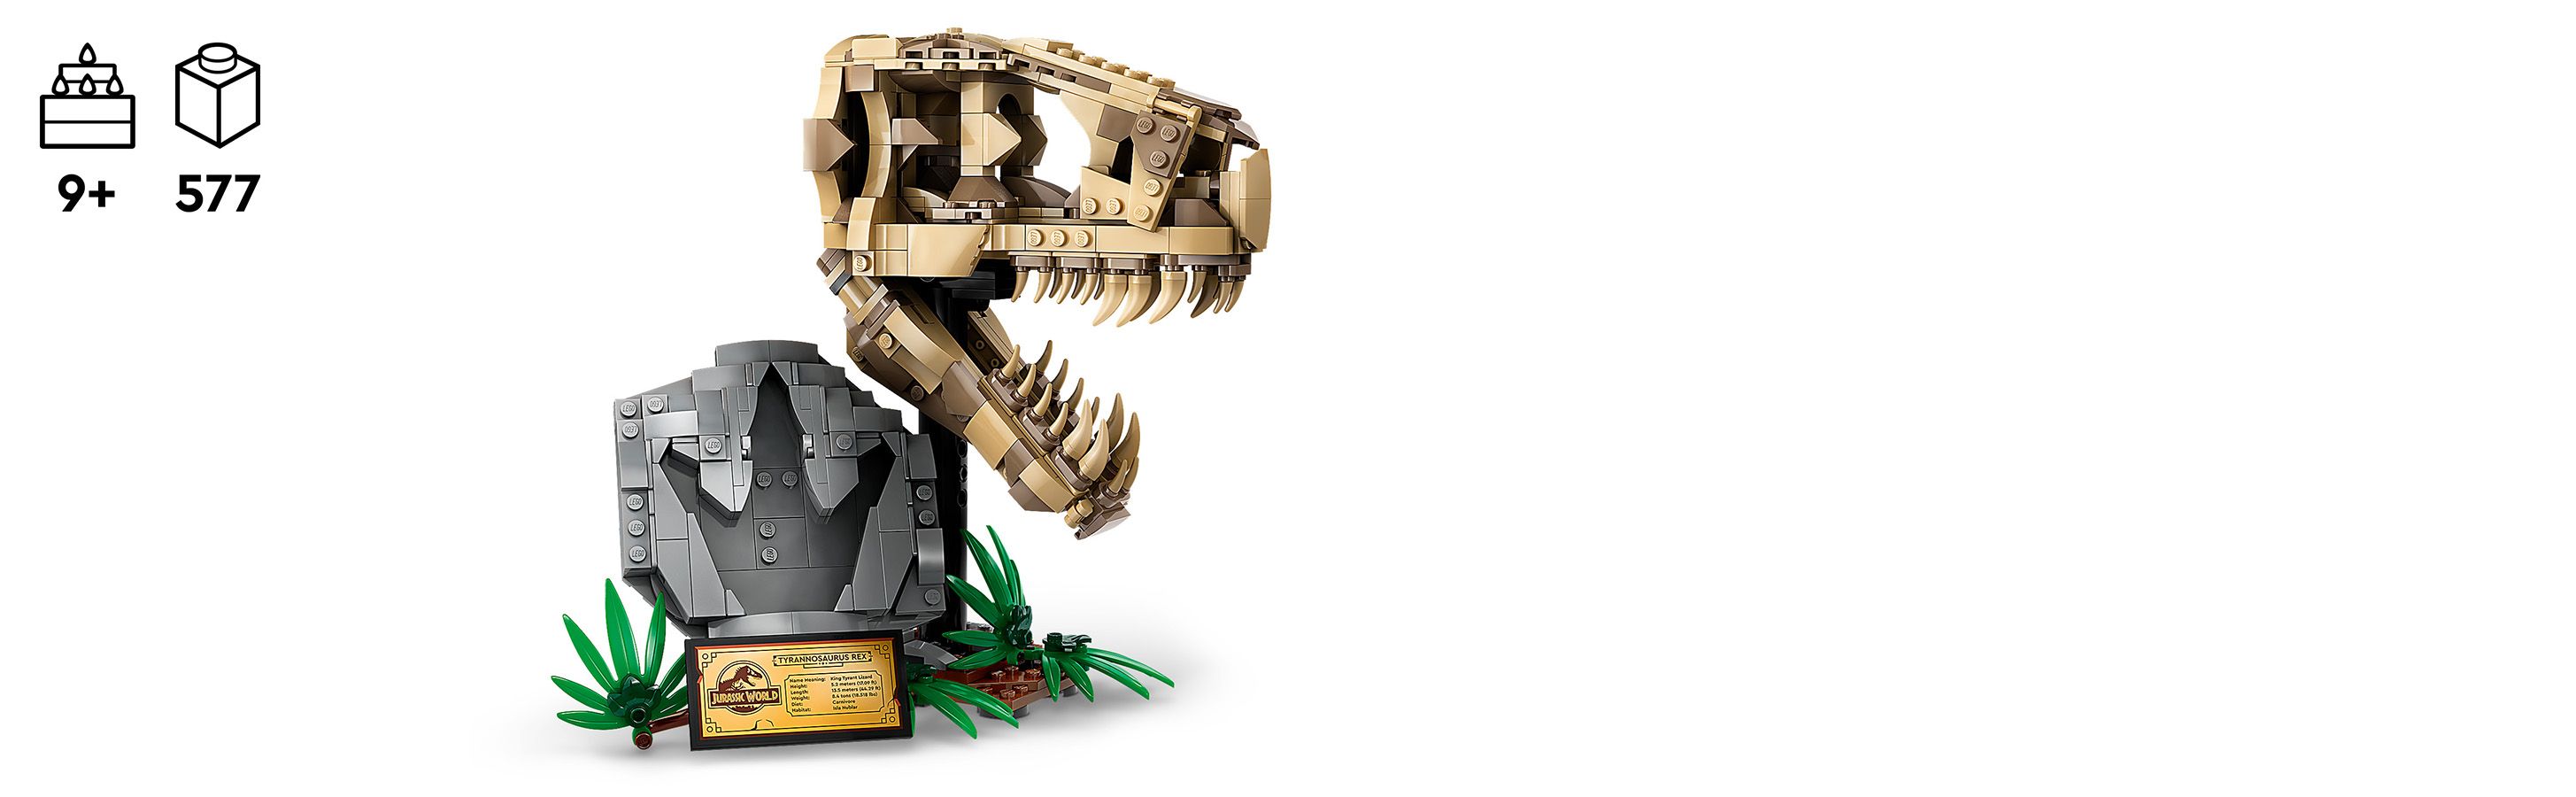 Sestavitelná dinosauří fosílie pro starší děti